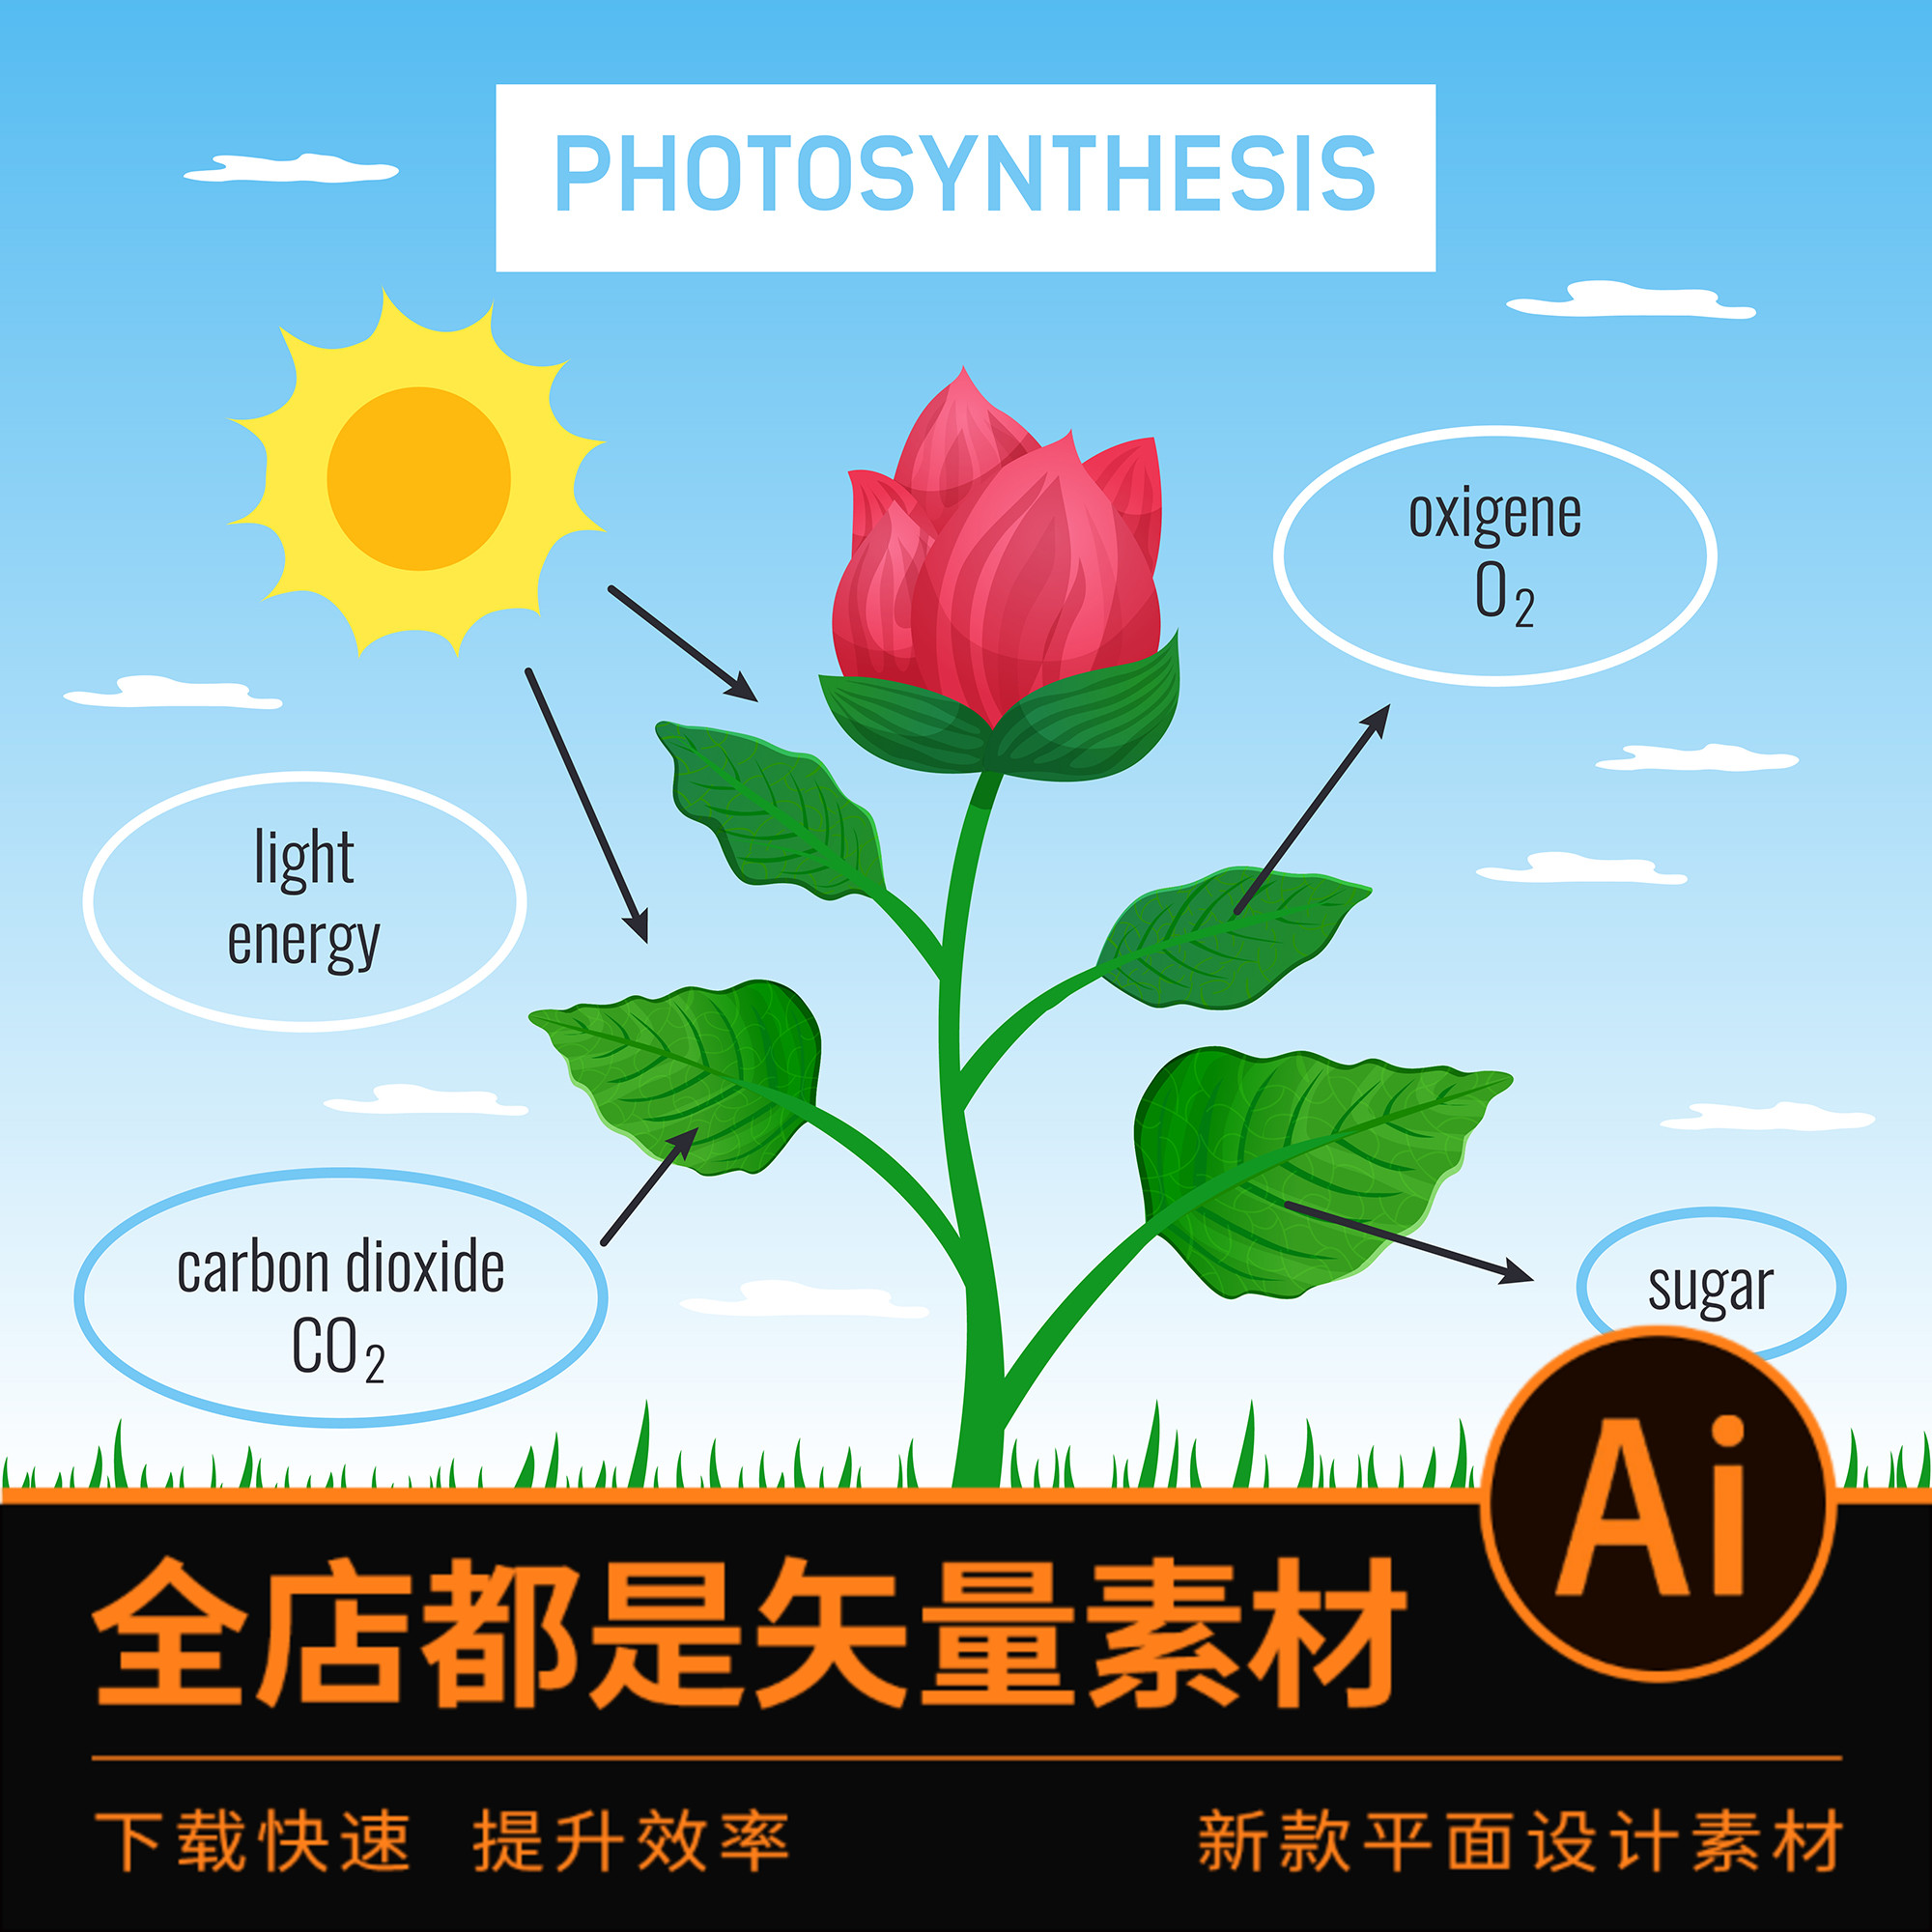 2221ai格式矢量素材花卉植物细胞光合作用根系生长过程分析图插画